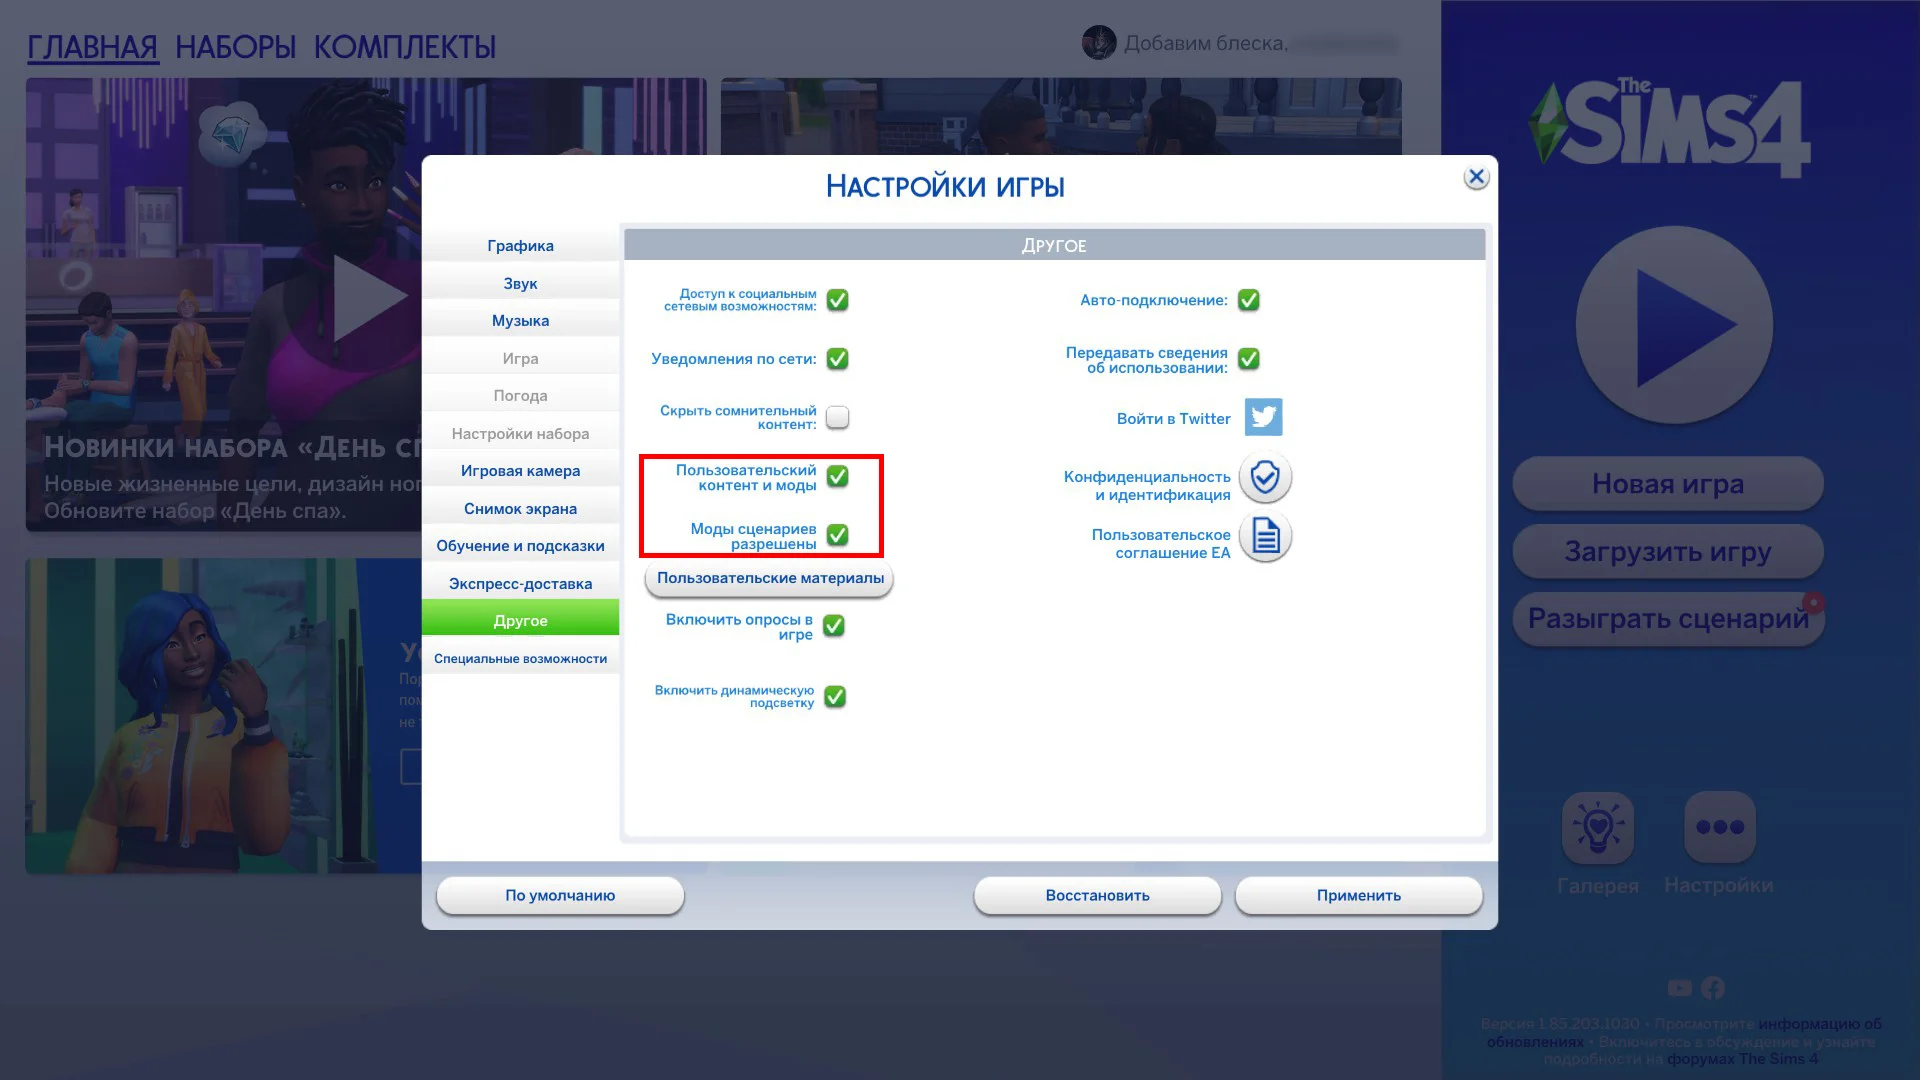 Как установить Симс 4: установка Sims 4